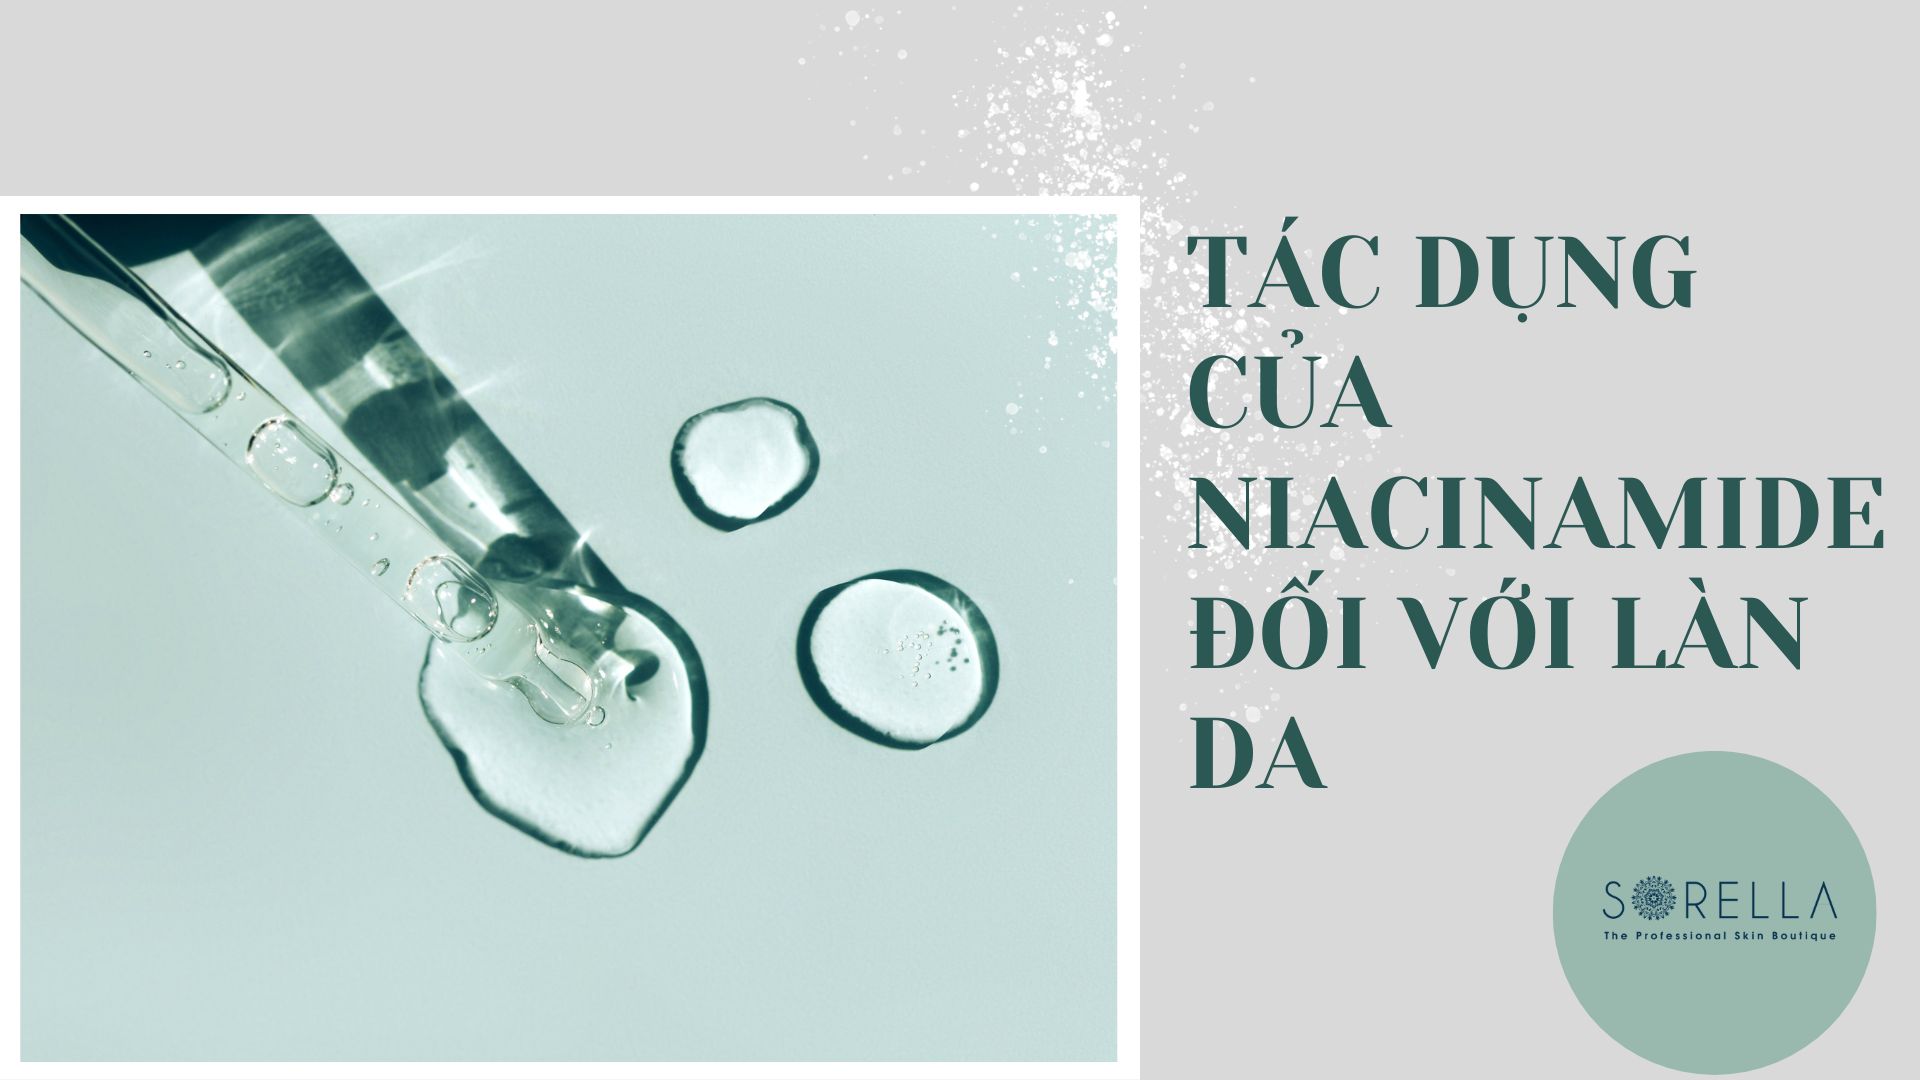 Tác dụng của Niacinamide đối với làn da